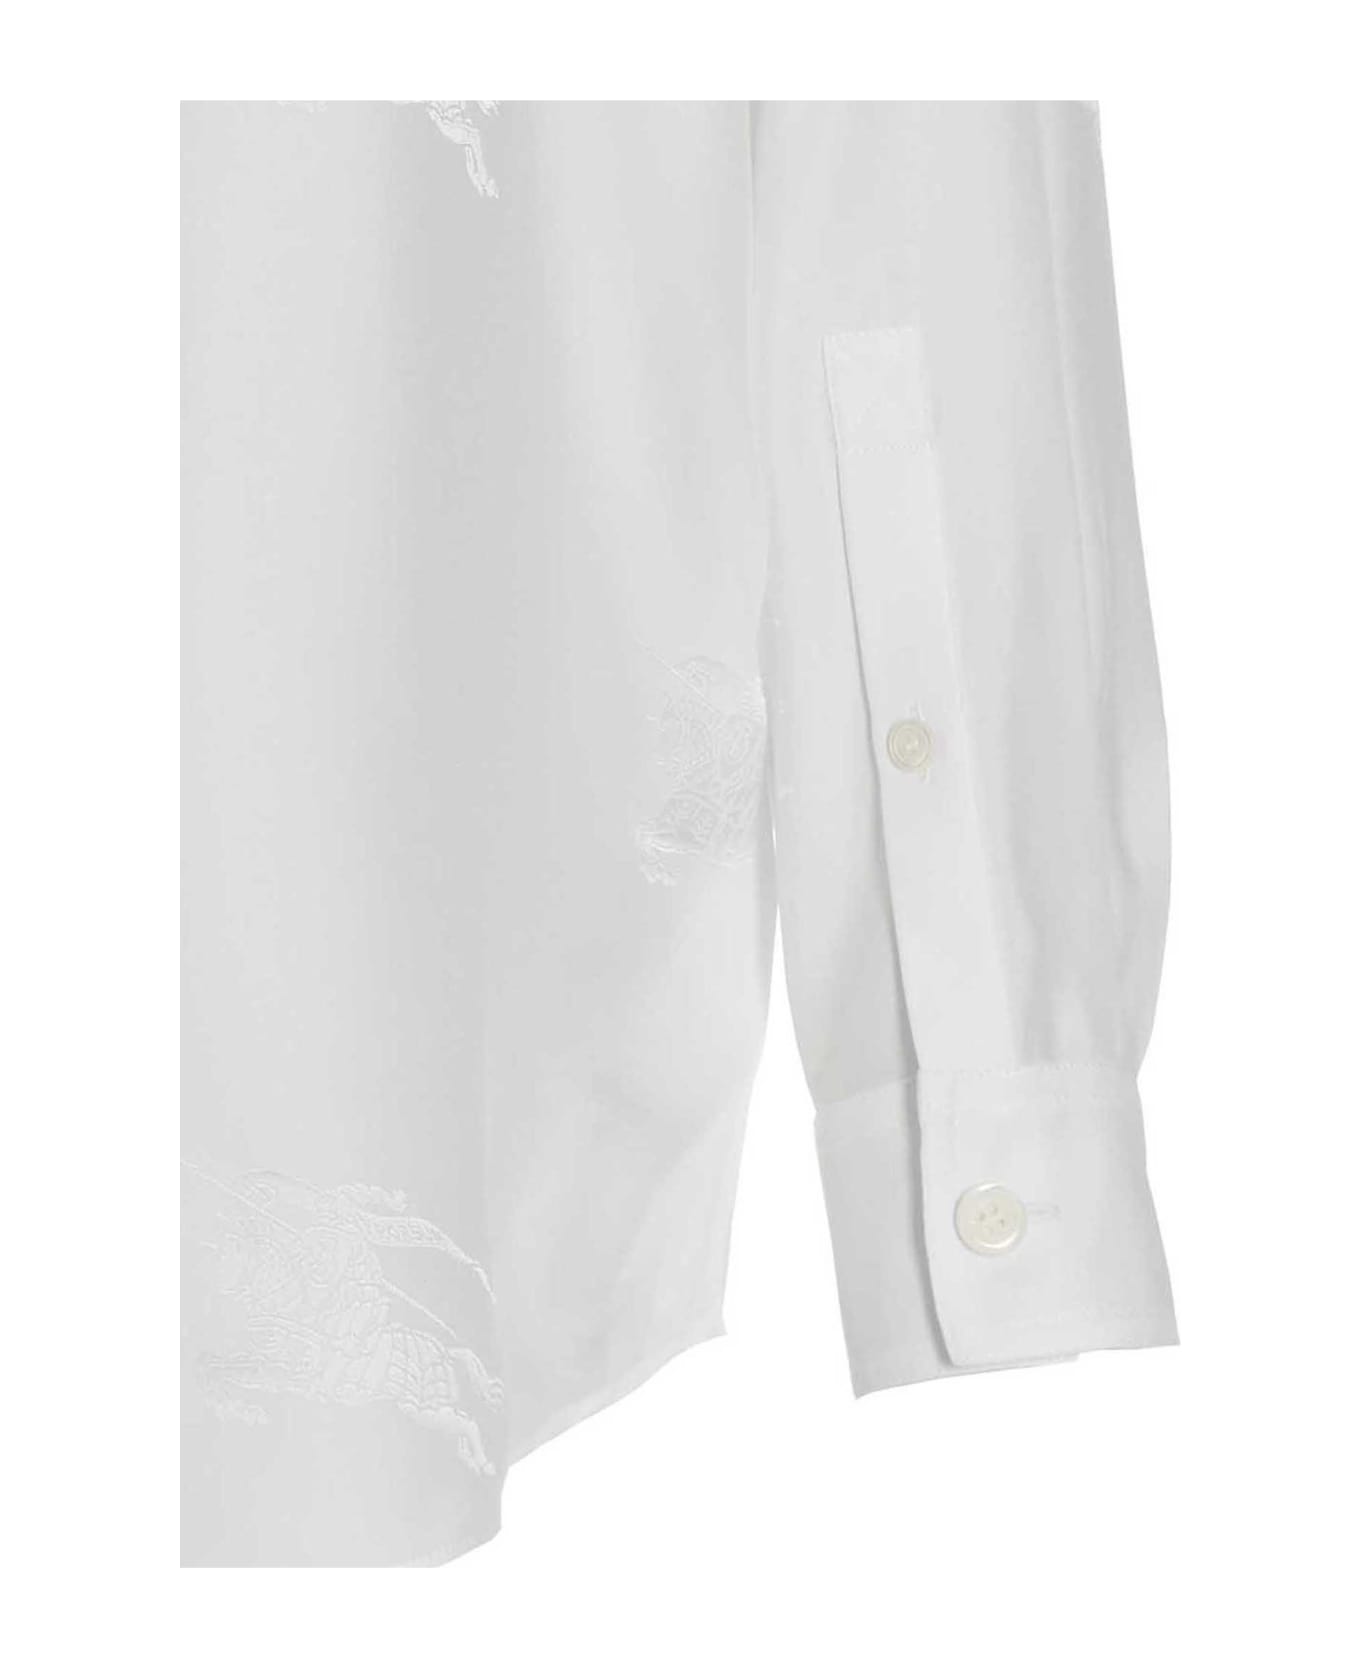 Burberry 'ivanna' Shirt - White